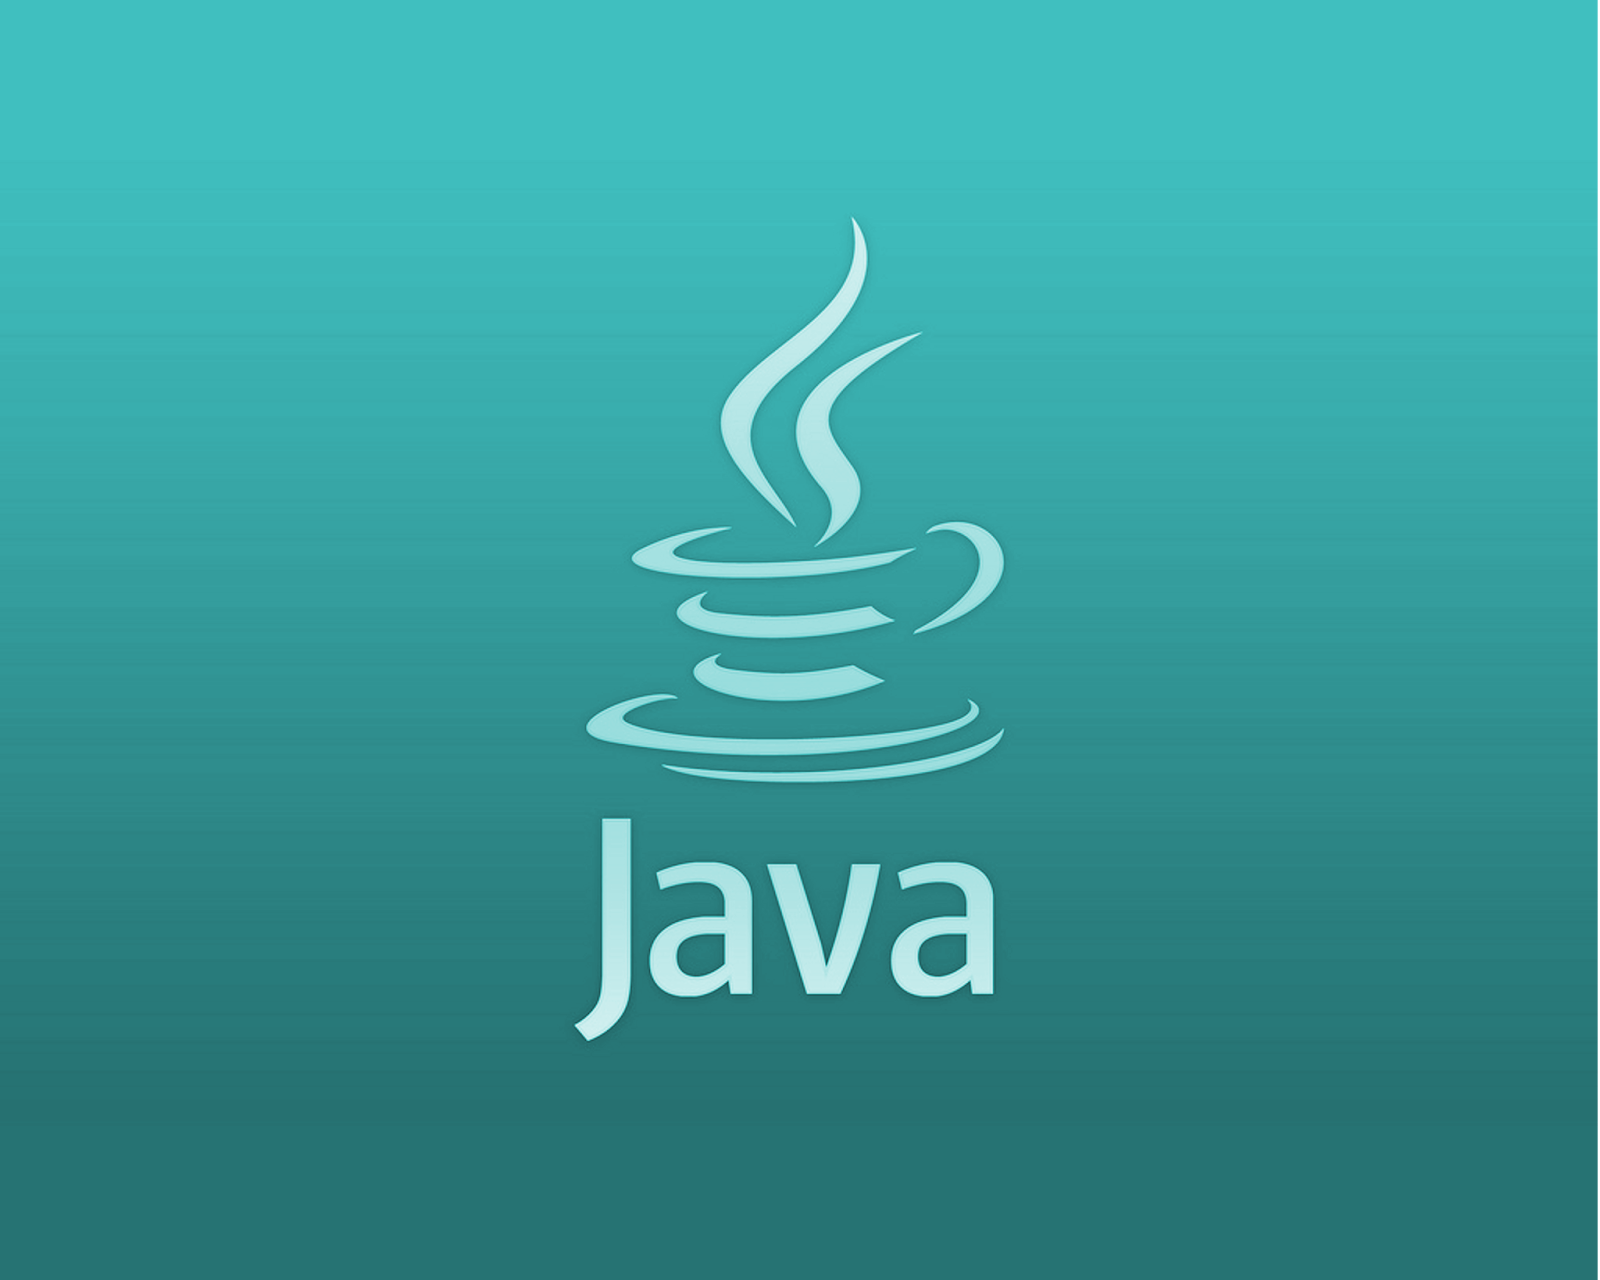 Язык программирования java. Java язык программирования логотип. Жавалоготип язык программирования. Иконка java.